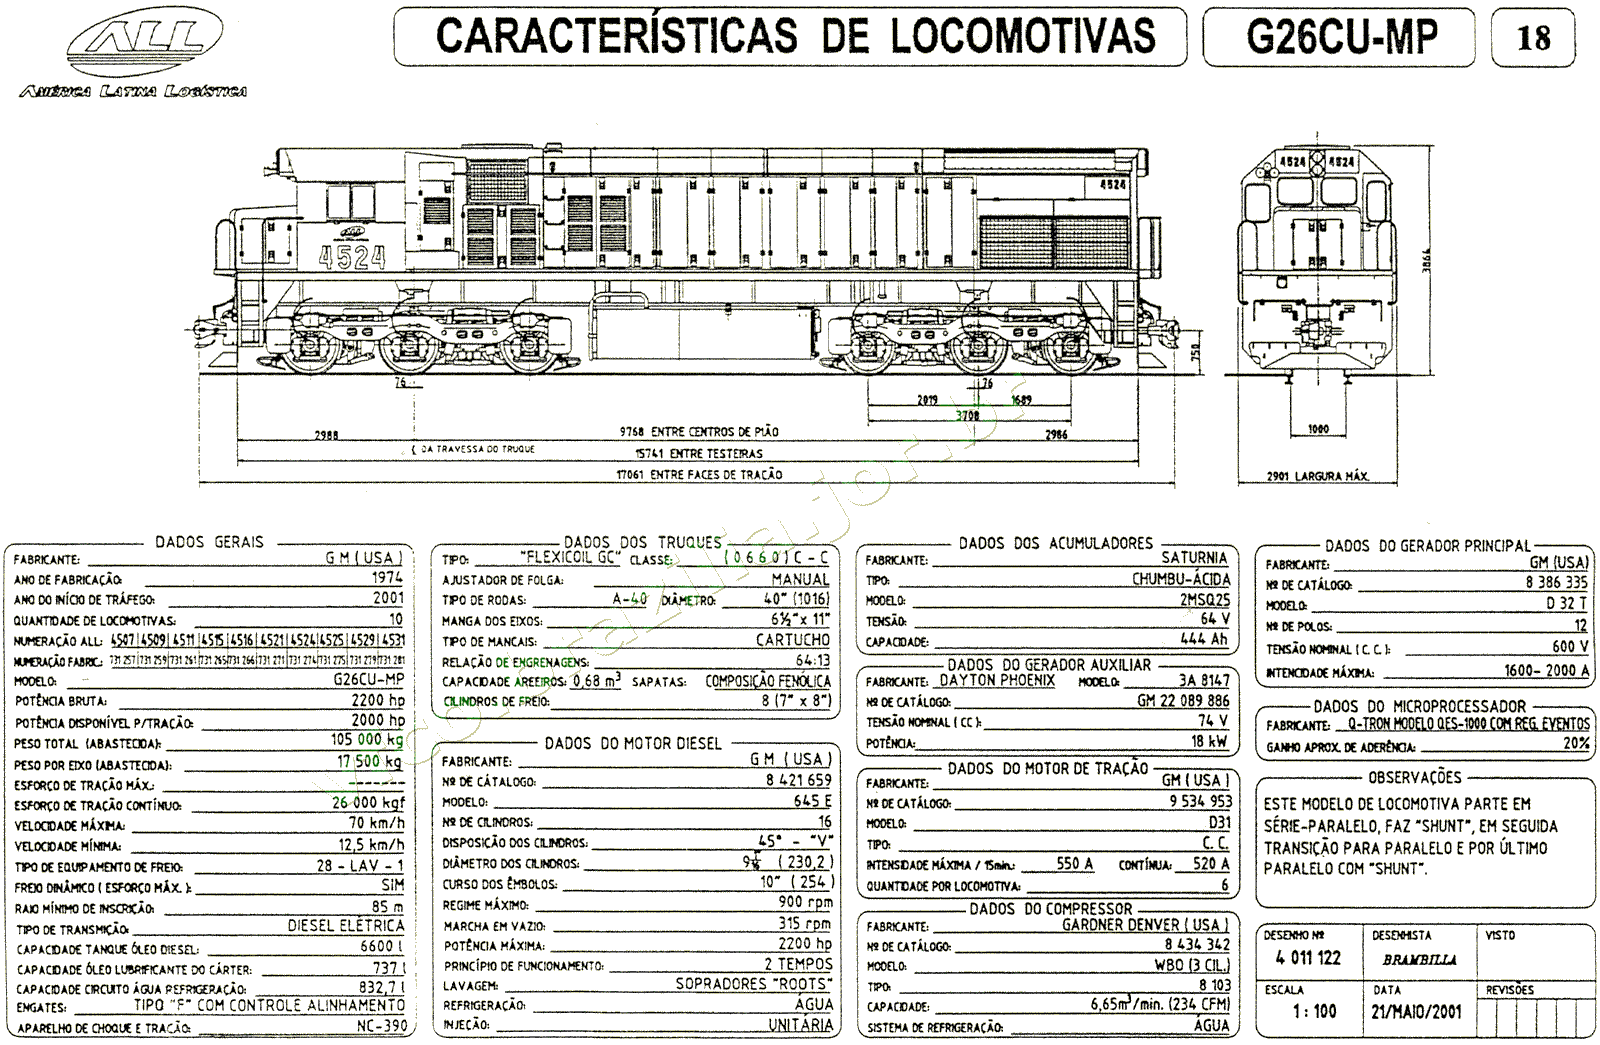 Desenho, medidas e características da Locomotiva G26CU-MP da ferrovia ALL